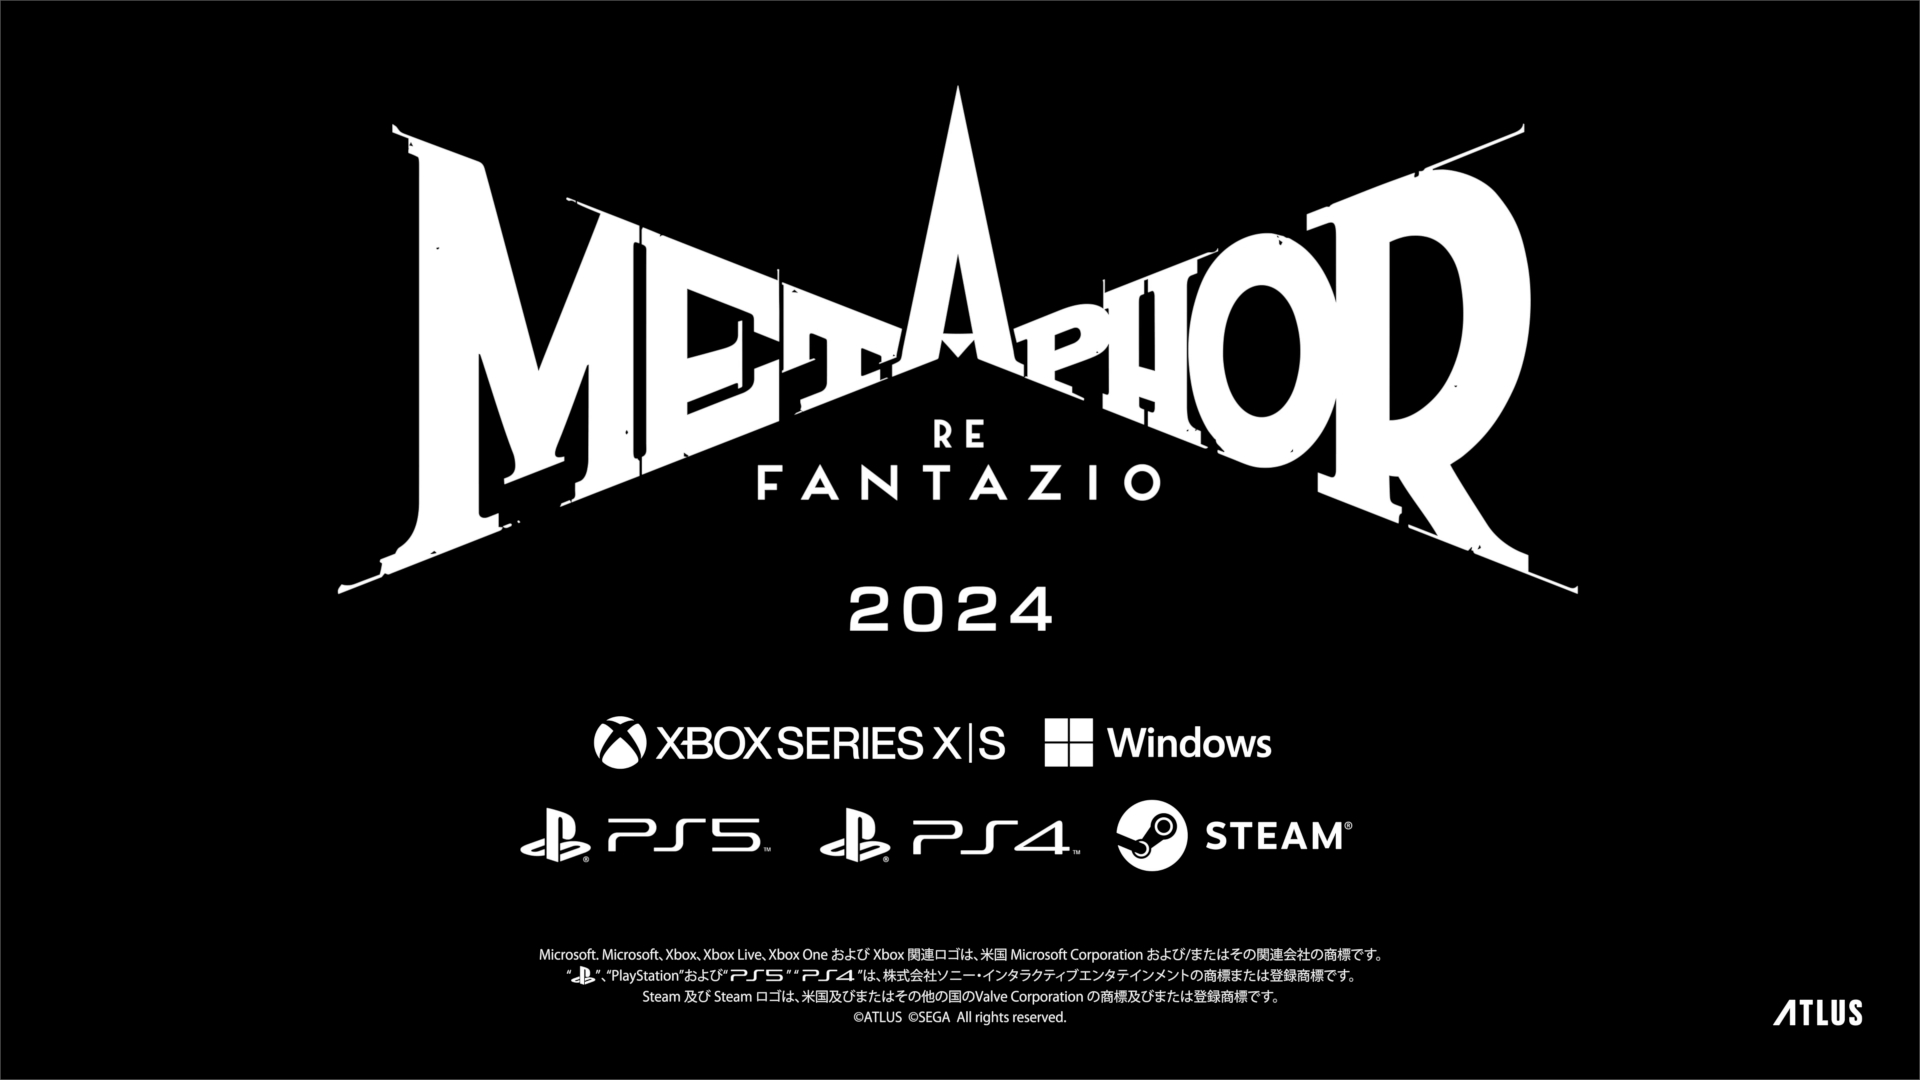 Объявлена ​​дата выхода Metaphor ReFantazio, а также геймплей и трейлеры